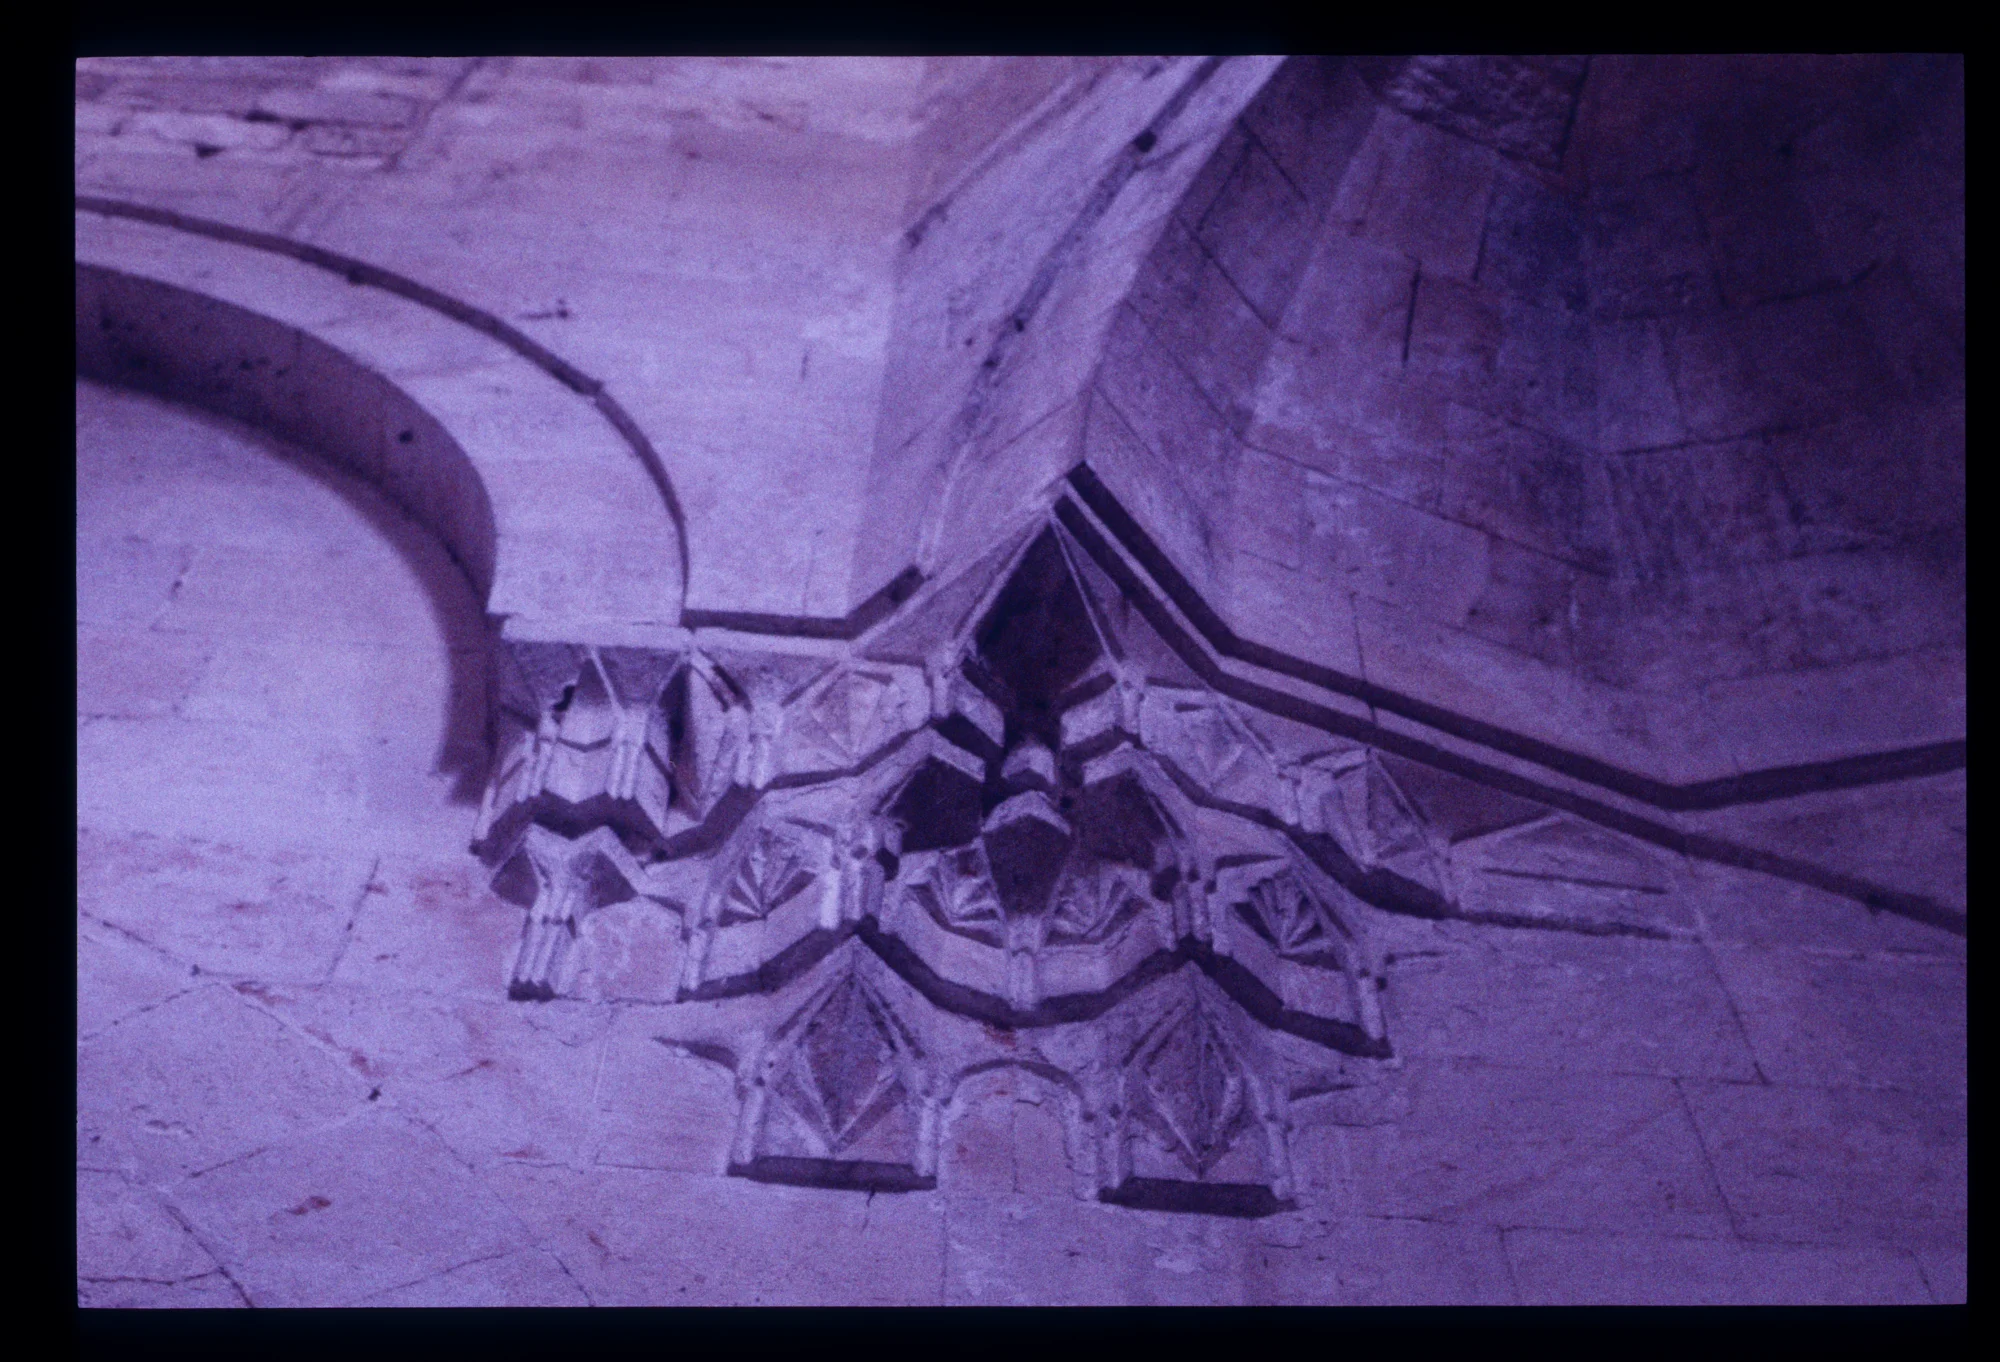 جامع أصلان دادا، تفاصيل من الحنيات الركنية والمقرنصات التي يتم الانتقال بواسطتها من الشكل المربع للقاعة إلي الشكل الدائري للقبة